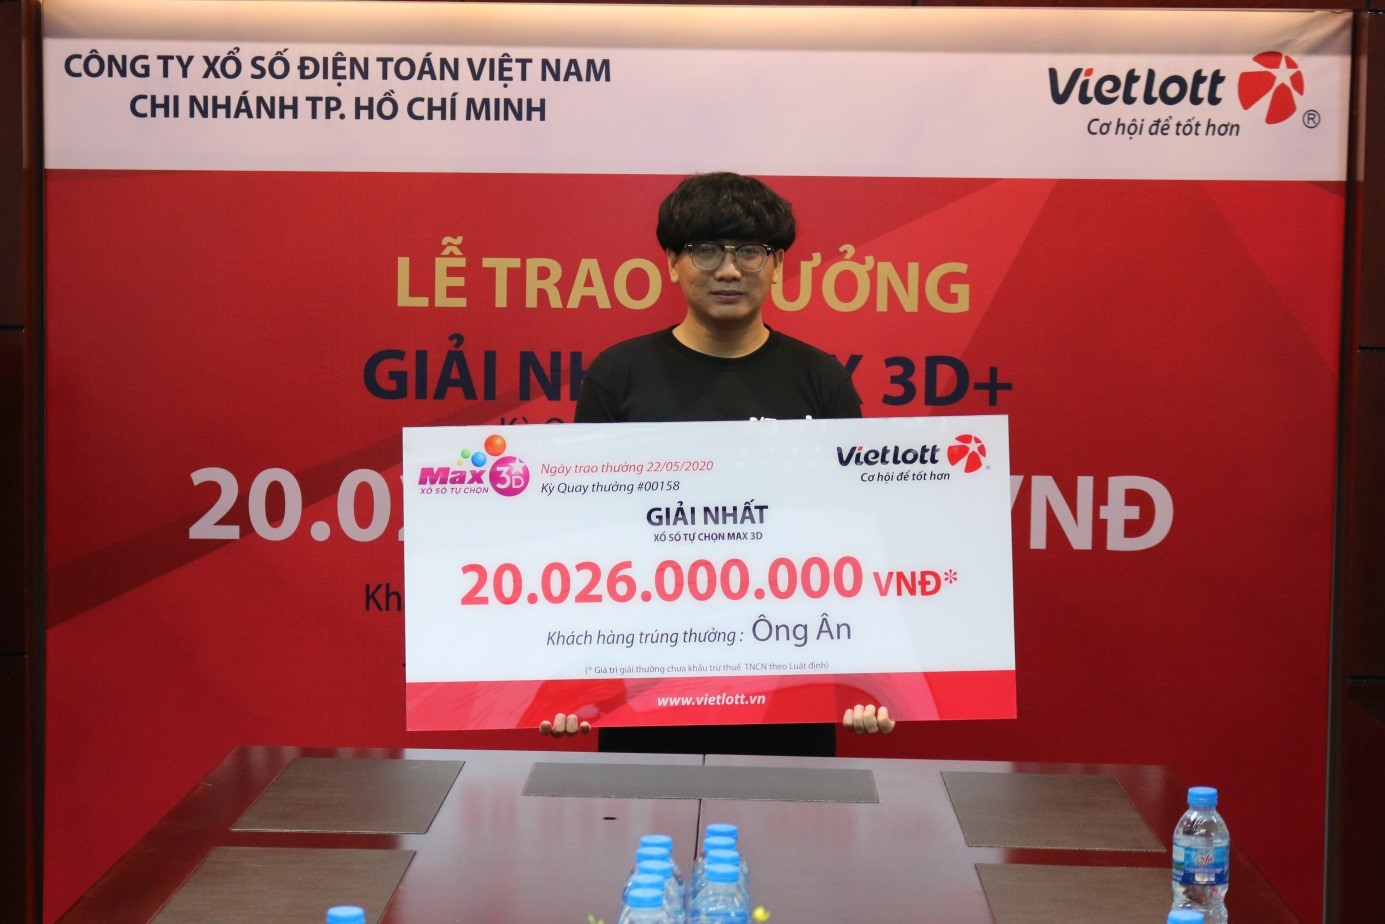 Vietlott trao giải lớn kỷ lục sản phẩm Max3D+ trị giá 20 tỷ đồng cho người trúng thưởng không đeo mặt nạ